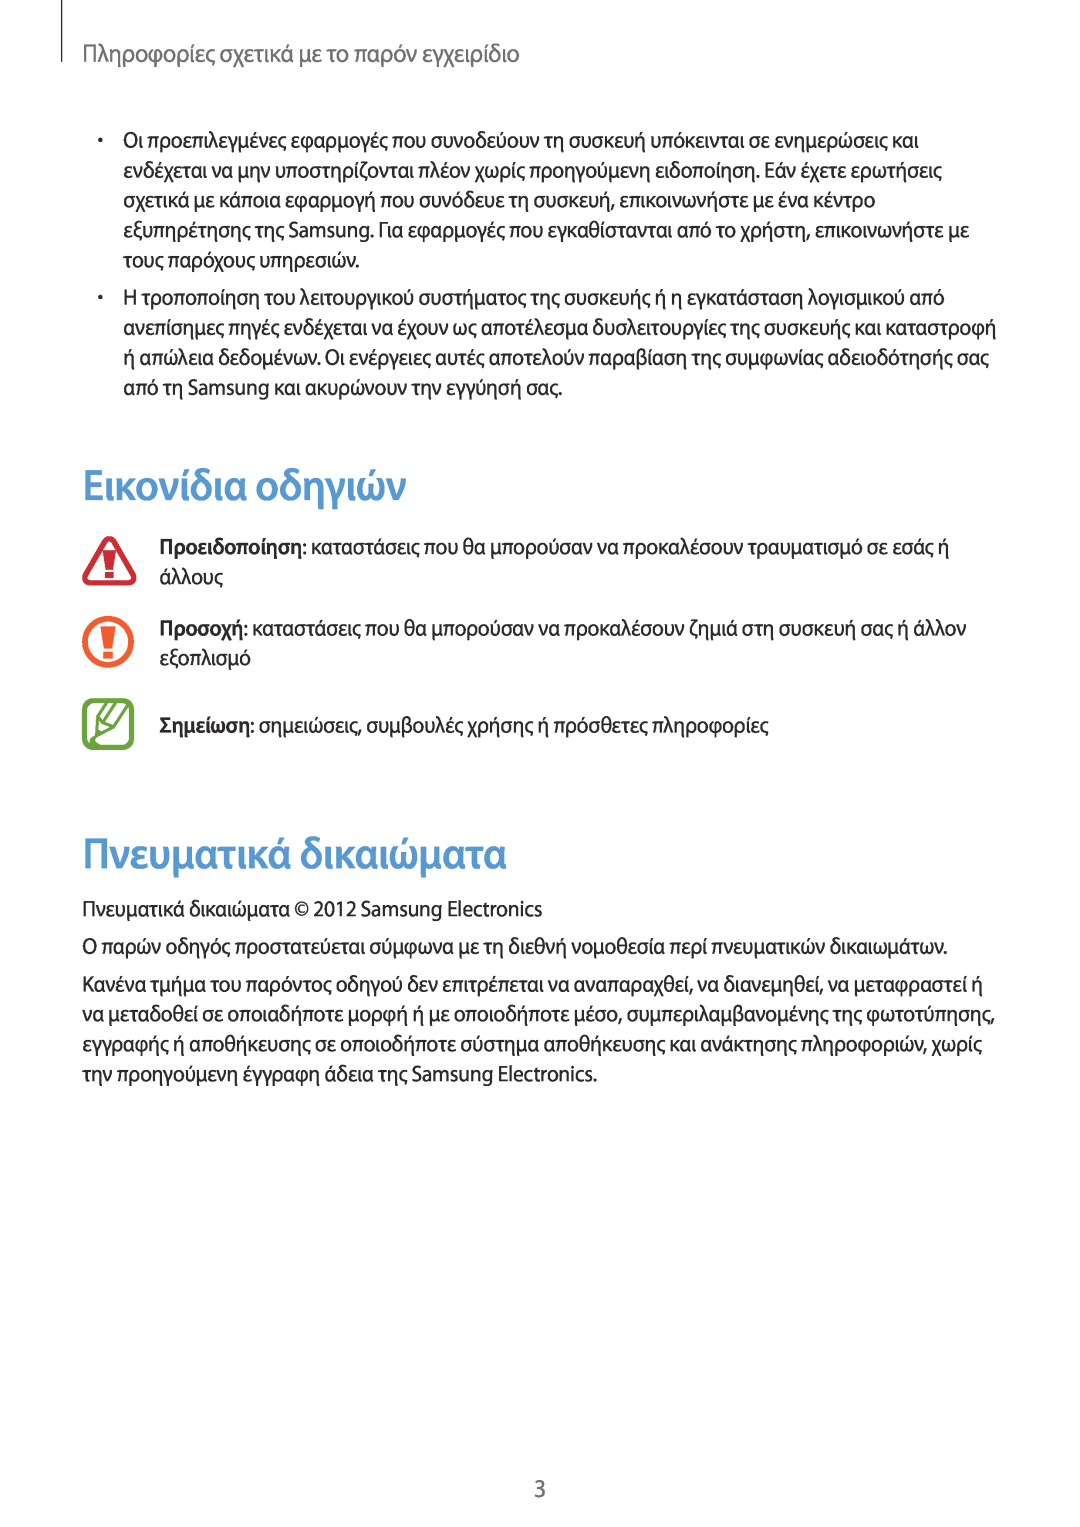 Samsung GT-N7100TADEUR manual Εικονίδια οδηγιών, Πνευματικά δικαιώματα, Πληροφορίες σχετικά με το παρόν εγχειρίδιο 